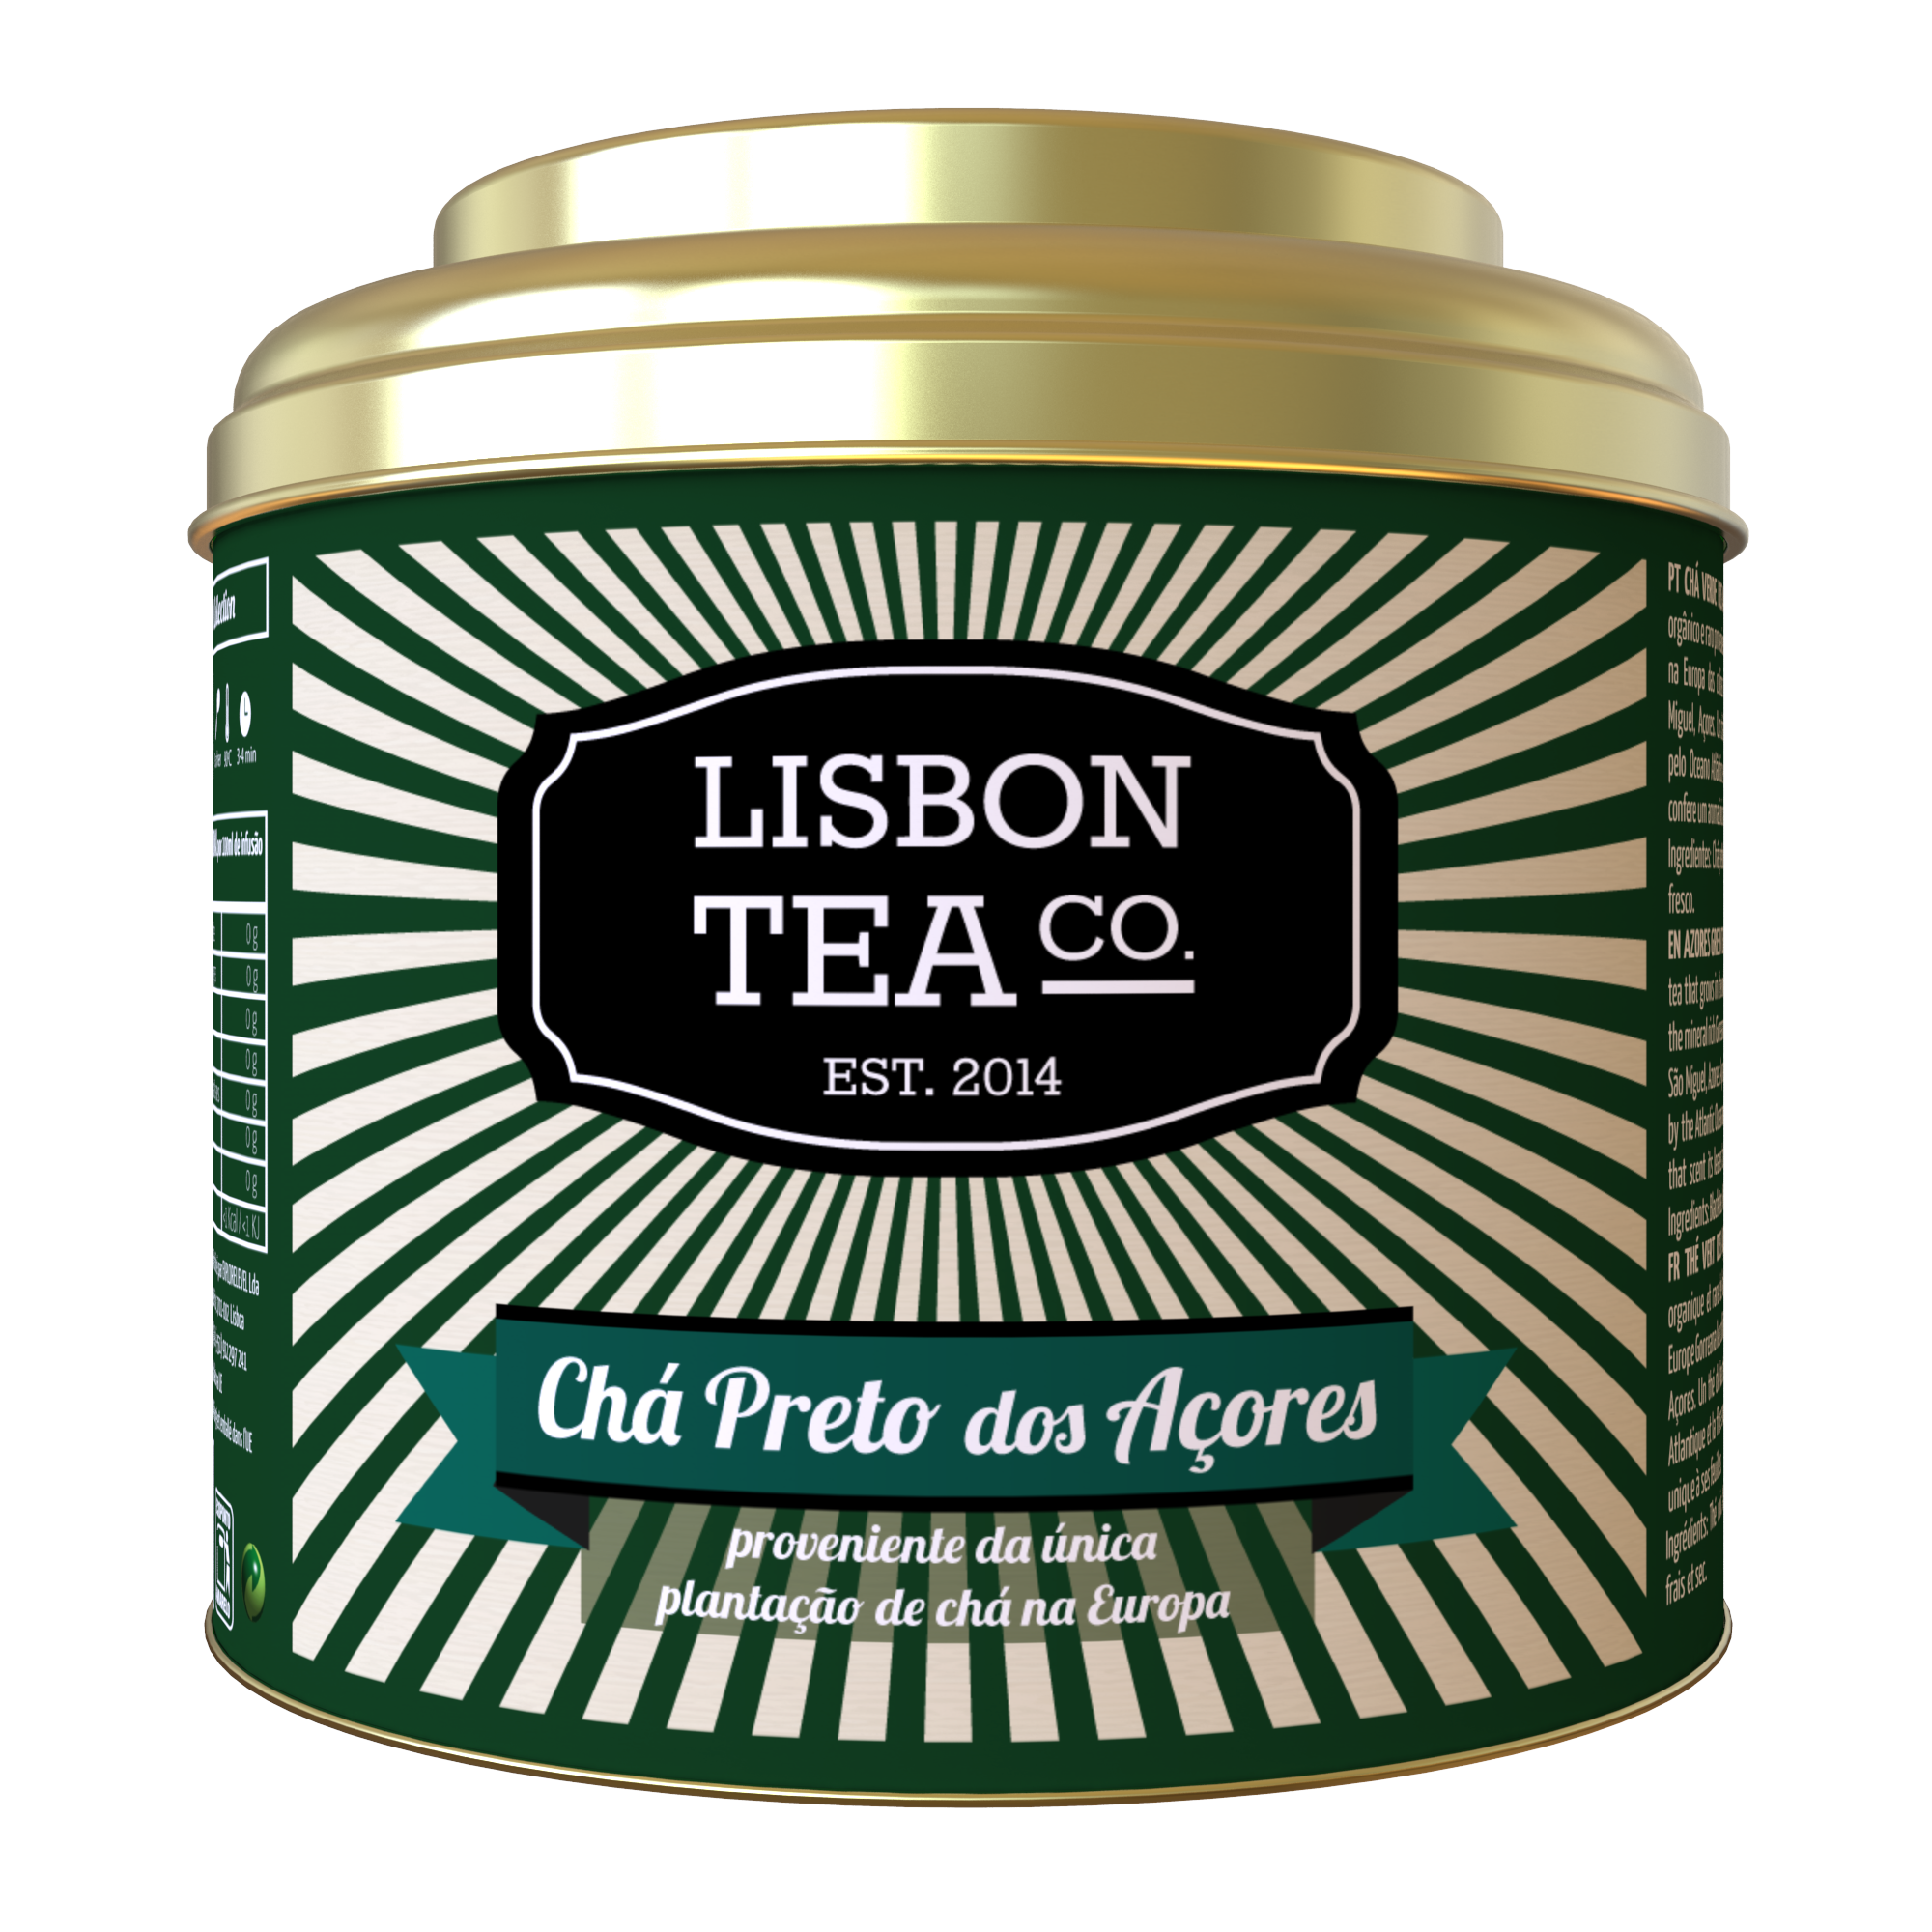 Chá Preto dos Açores